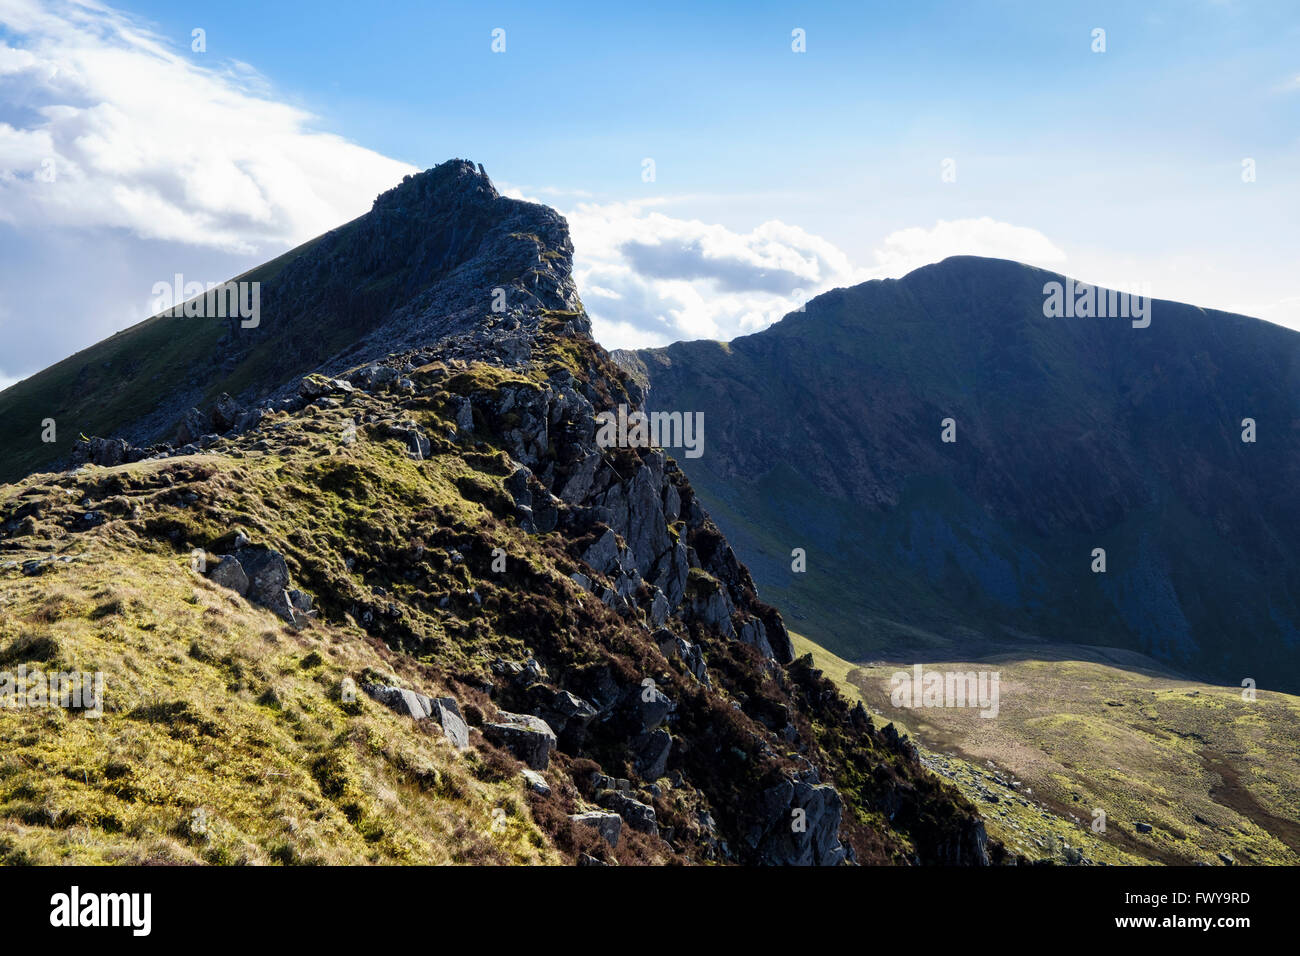 Felsigen Gipfel des Mynydd Drws-y-Coed mit Trum y Ddysgl jenseits auf der Nantlle Ridge in den Bergen von Snowdonia National Park (Eryri) Wales UK Stockfoto